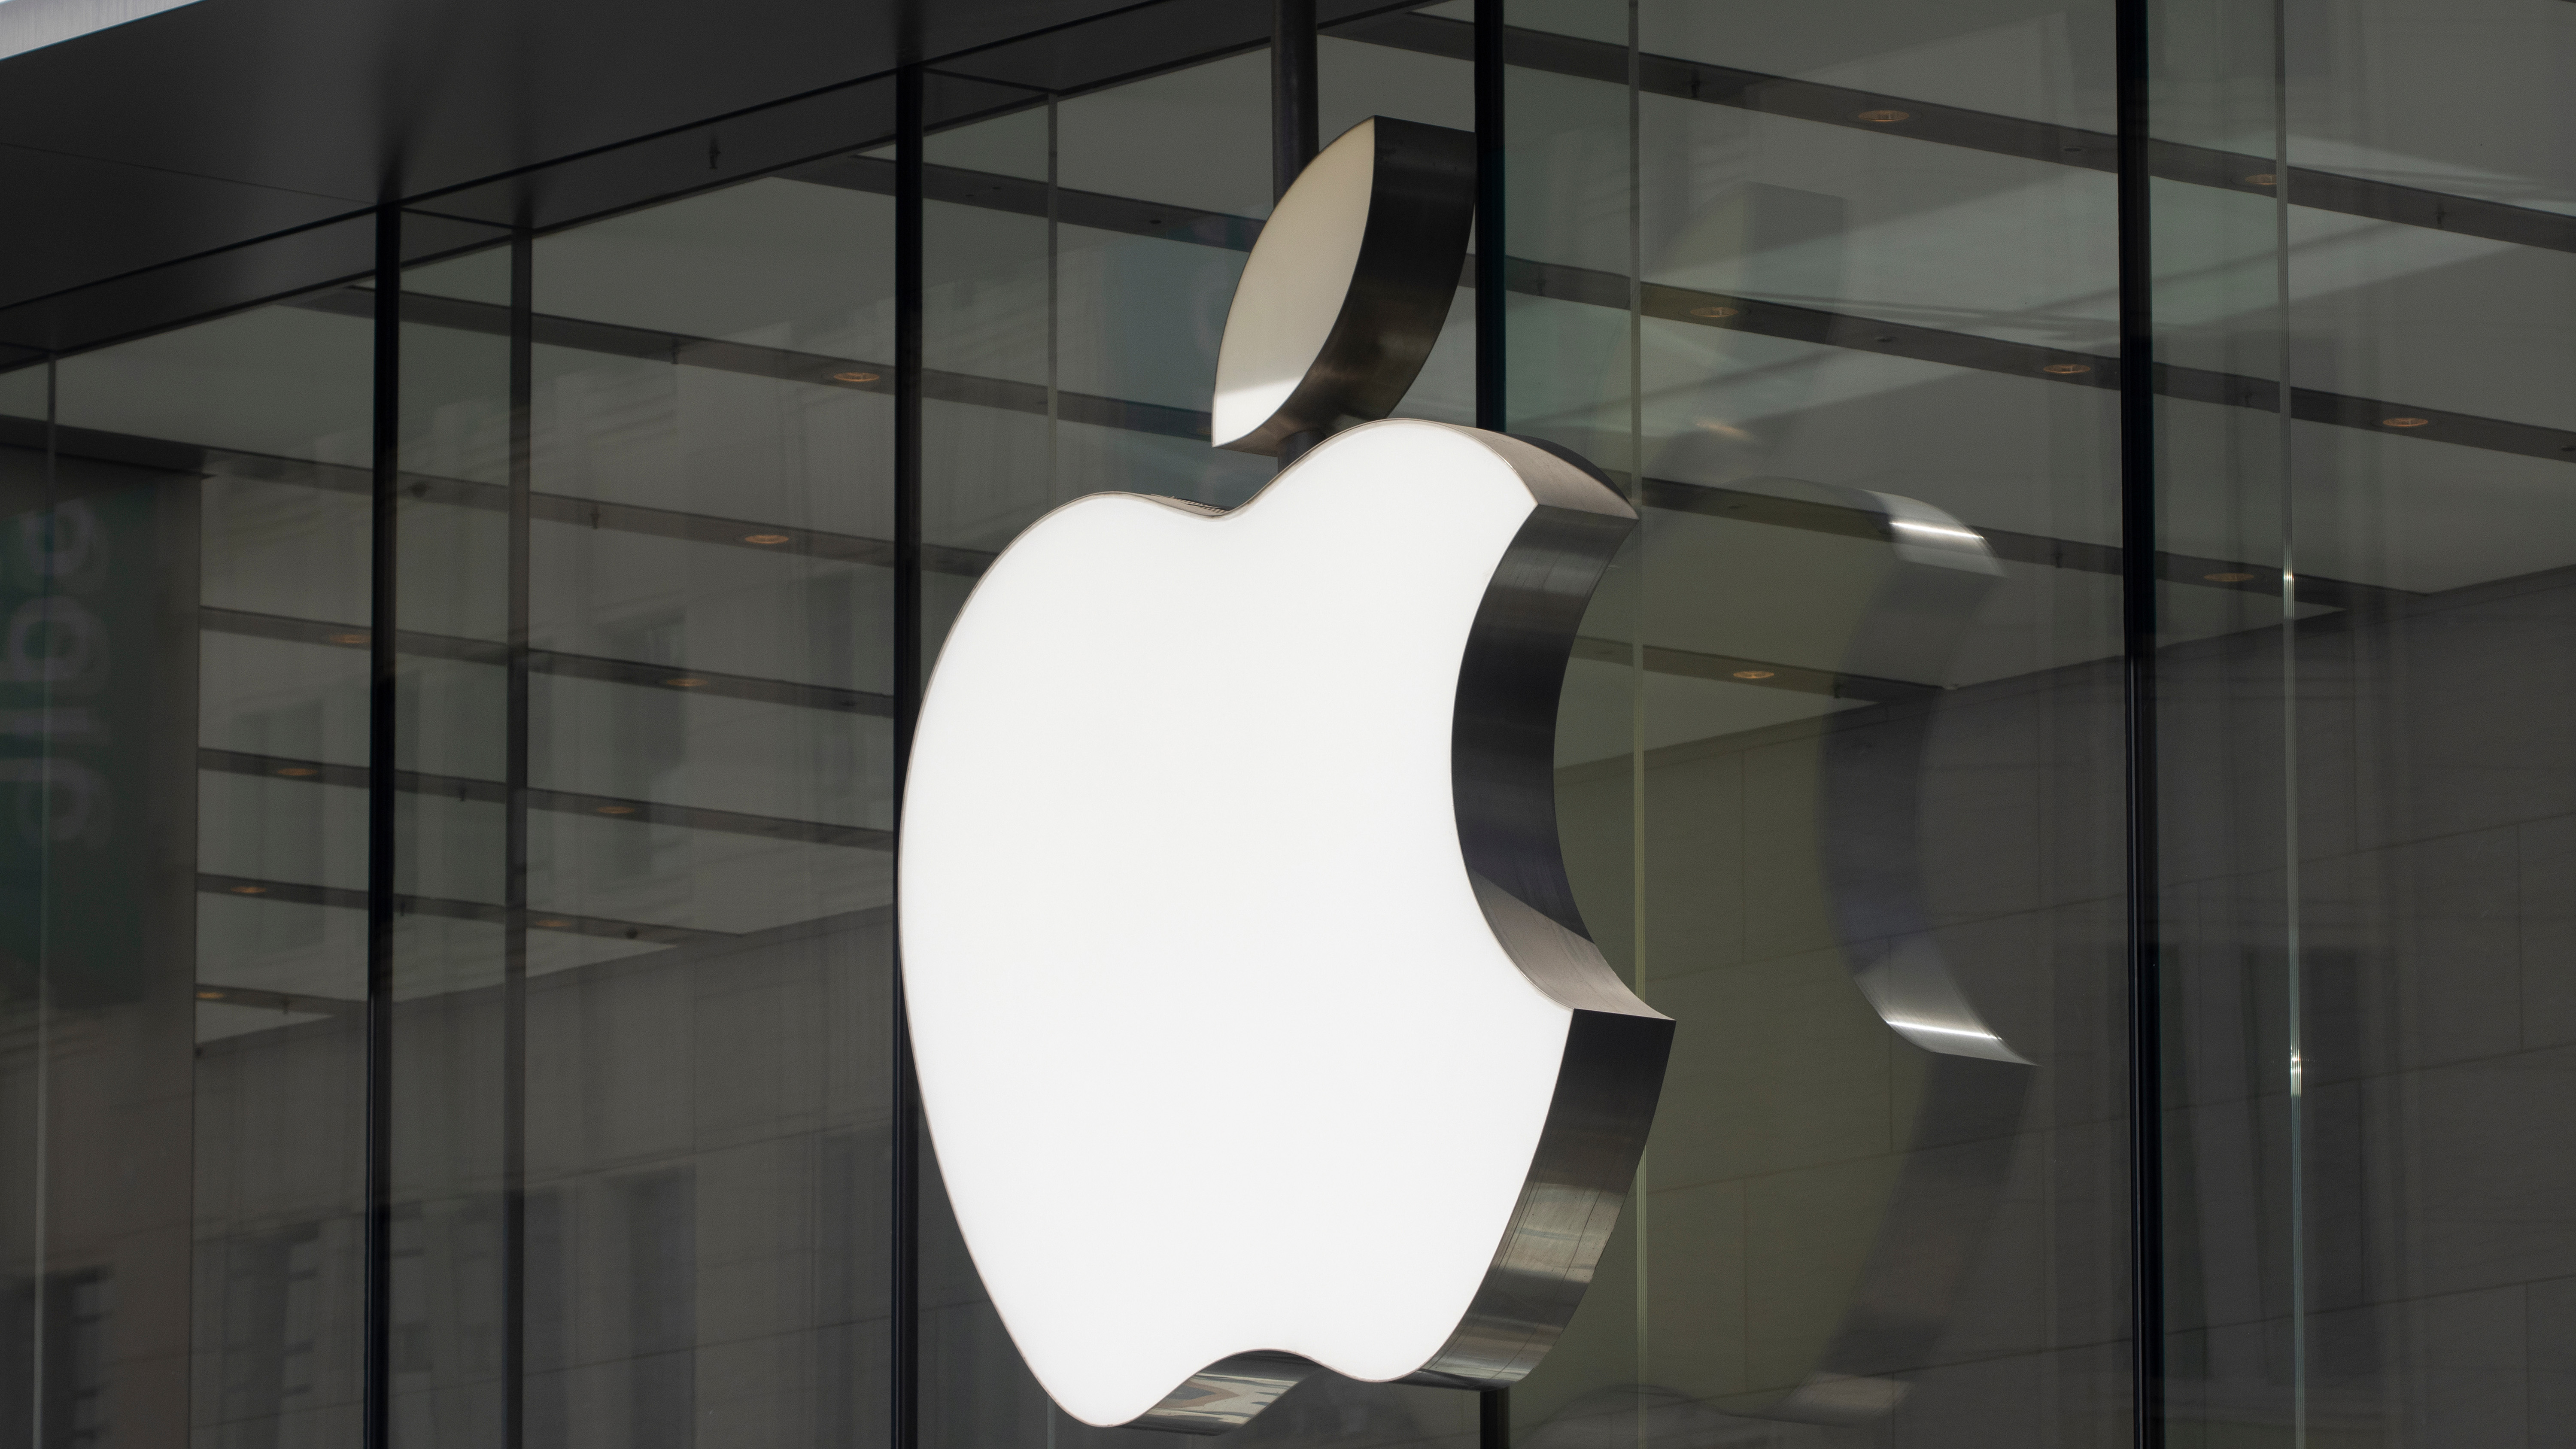 中国・上海 - 2023年10月23日: 上海のApple南京東旗艦店でAppleのロゴが見られる。 Apple Inc. は、カリフォルニア州クパチーノに本社を置くアメリカの多国籍テクノロジー企業です。